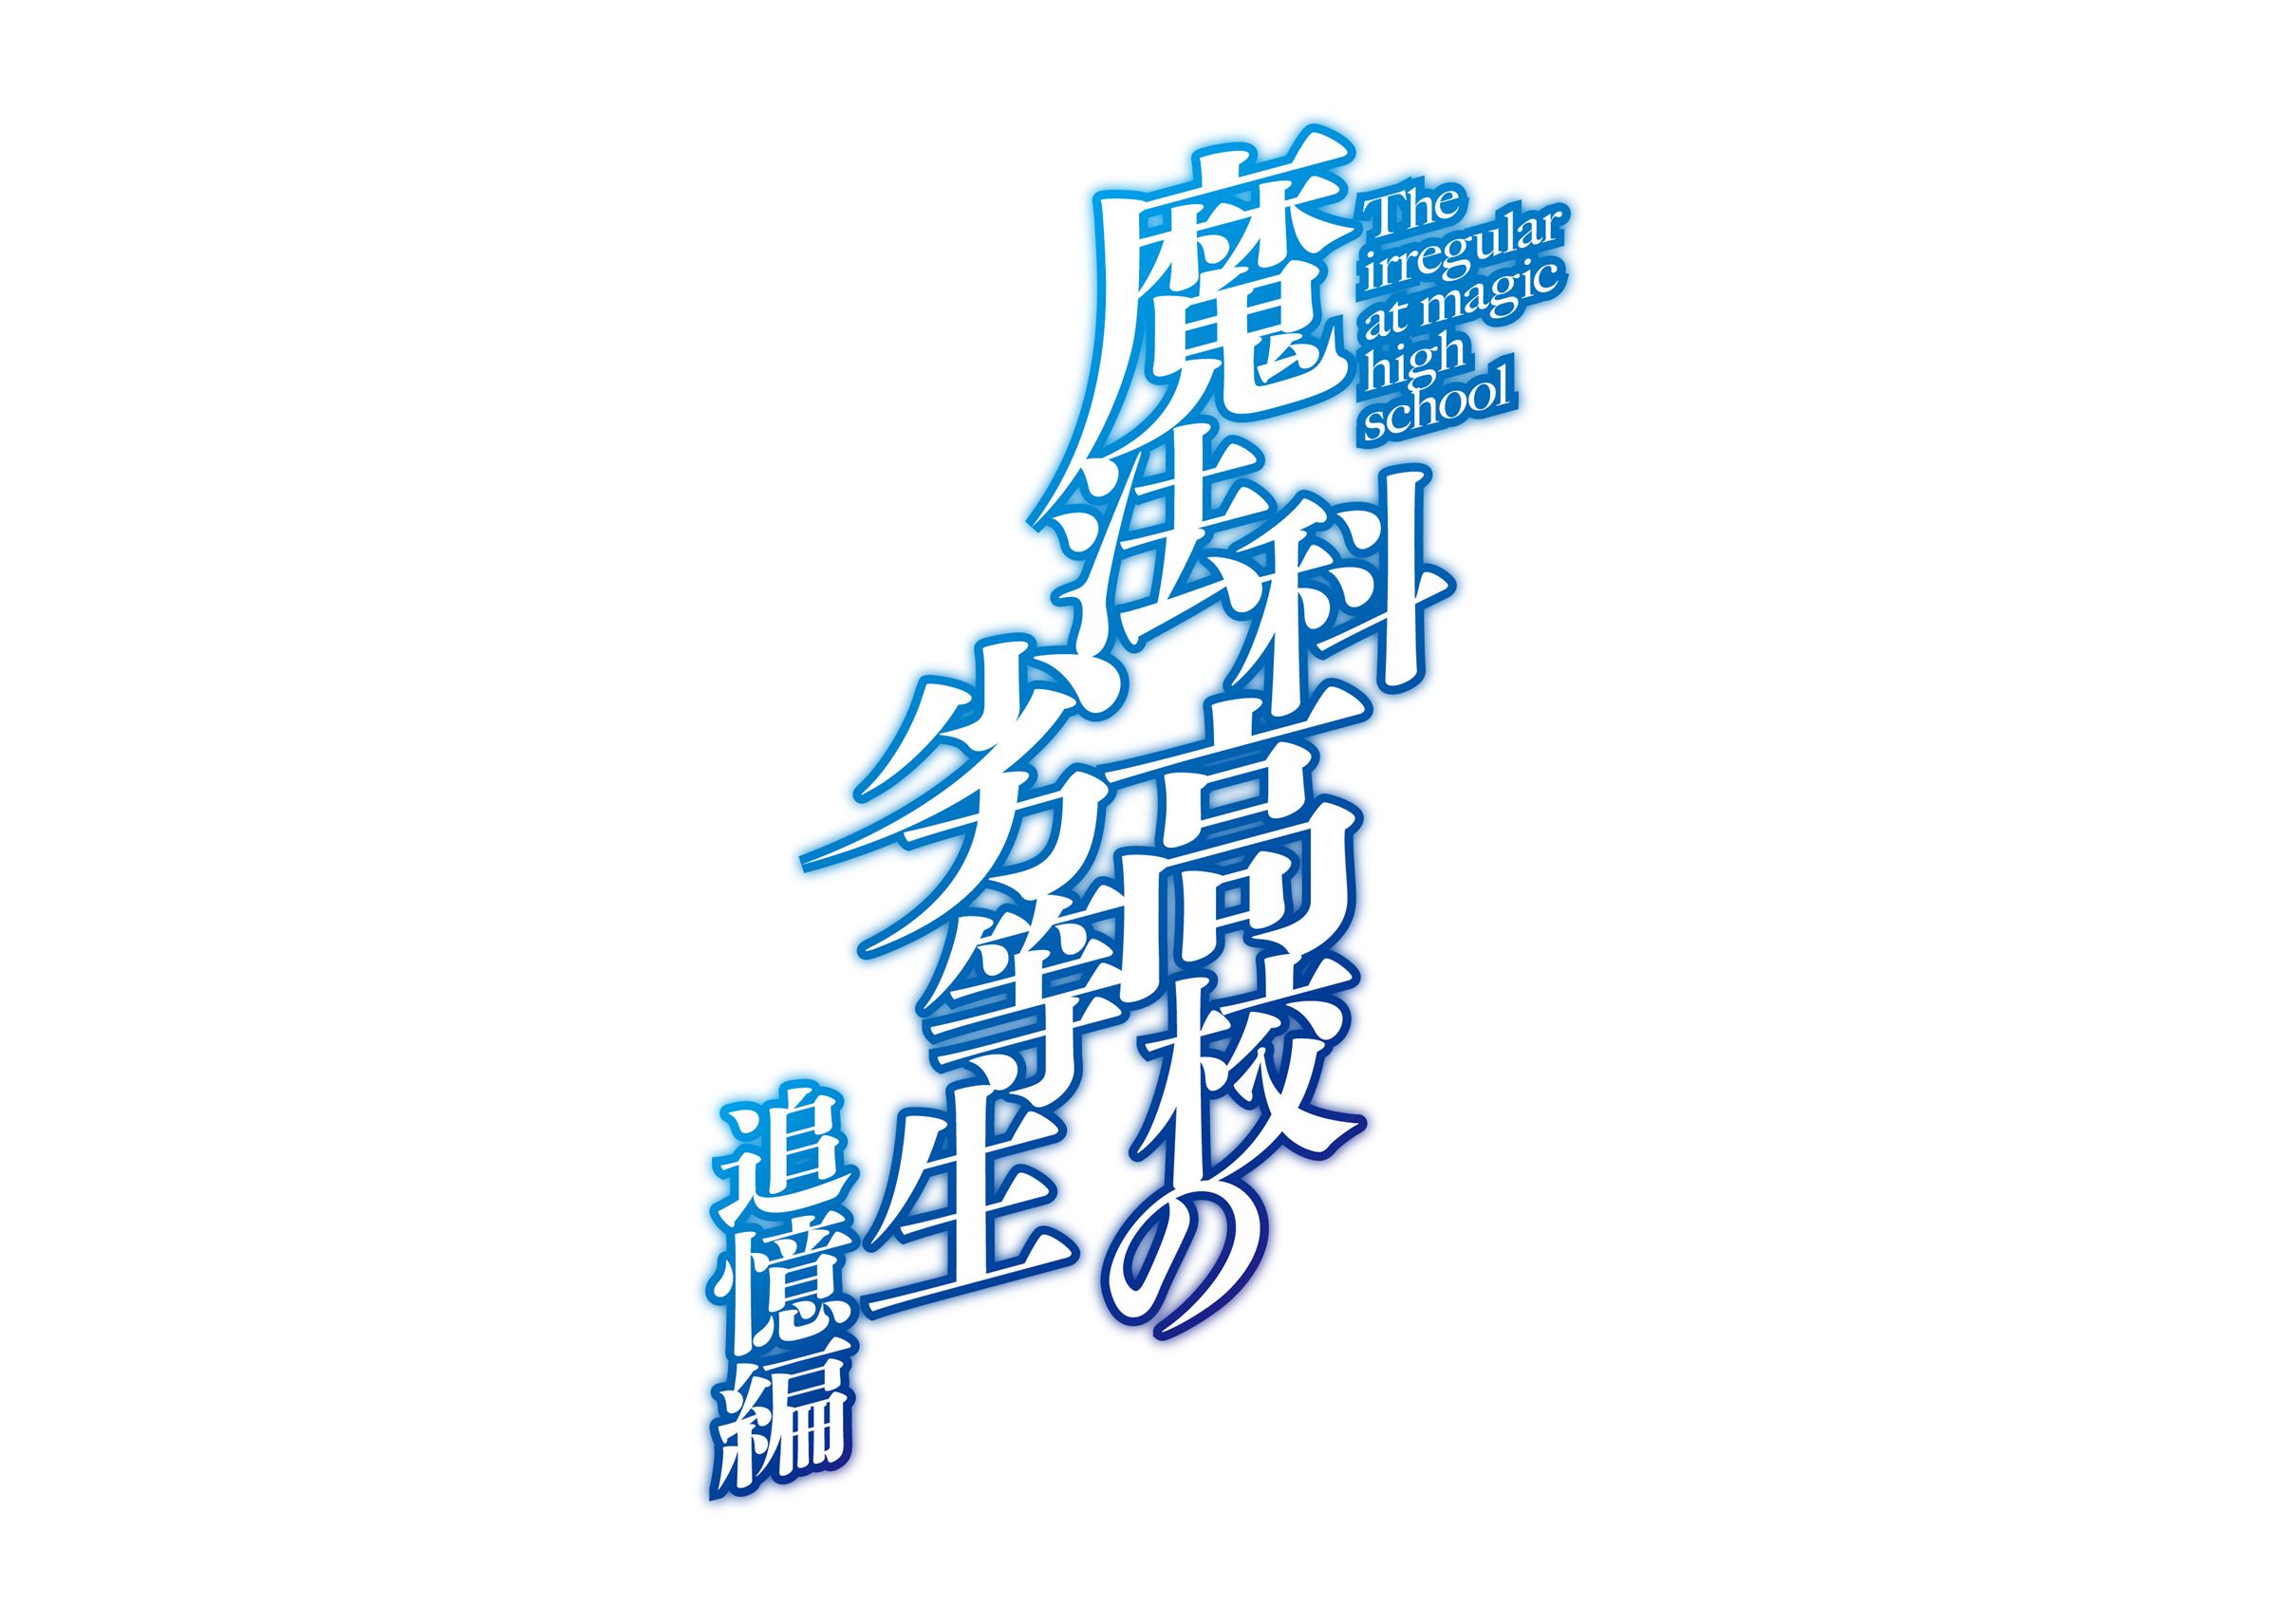 『魔法科高校の劣等生 追憶編』ロゴ ©2019 佐島 勤/KADOKAWA/魔法科高校 2 製作委員会